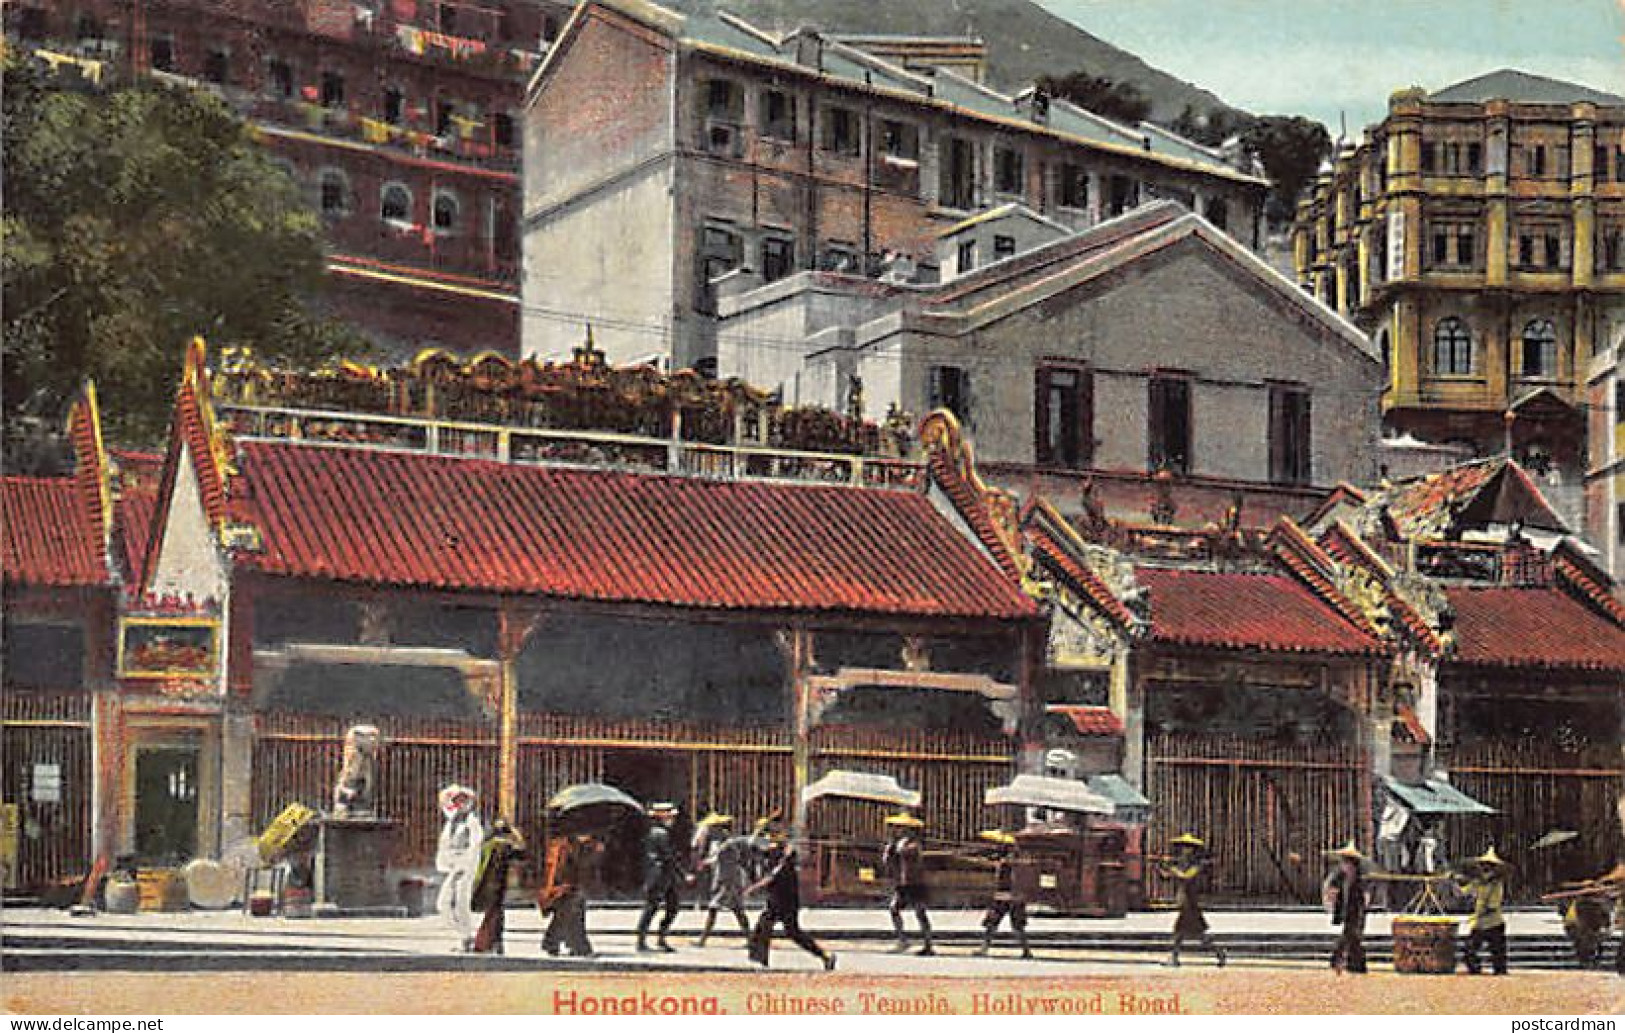 China - HONG KONG - Chinese Temple, Hollywood Road - Publ. Turco-Egyptian Tobacco Store  - Chine (Hong Kong)